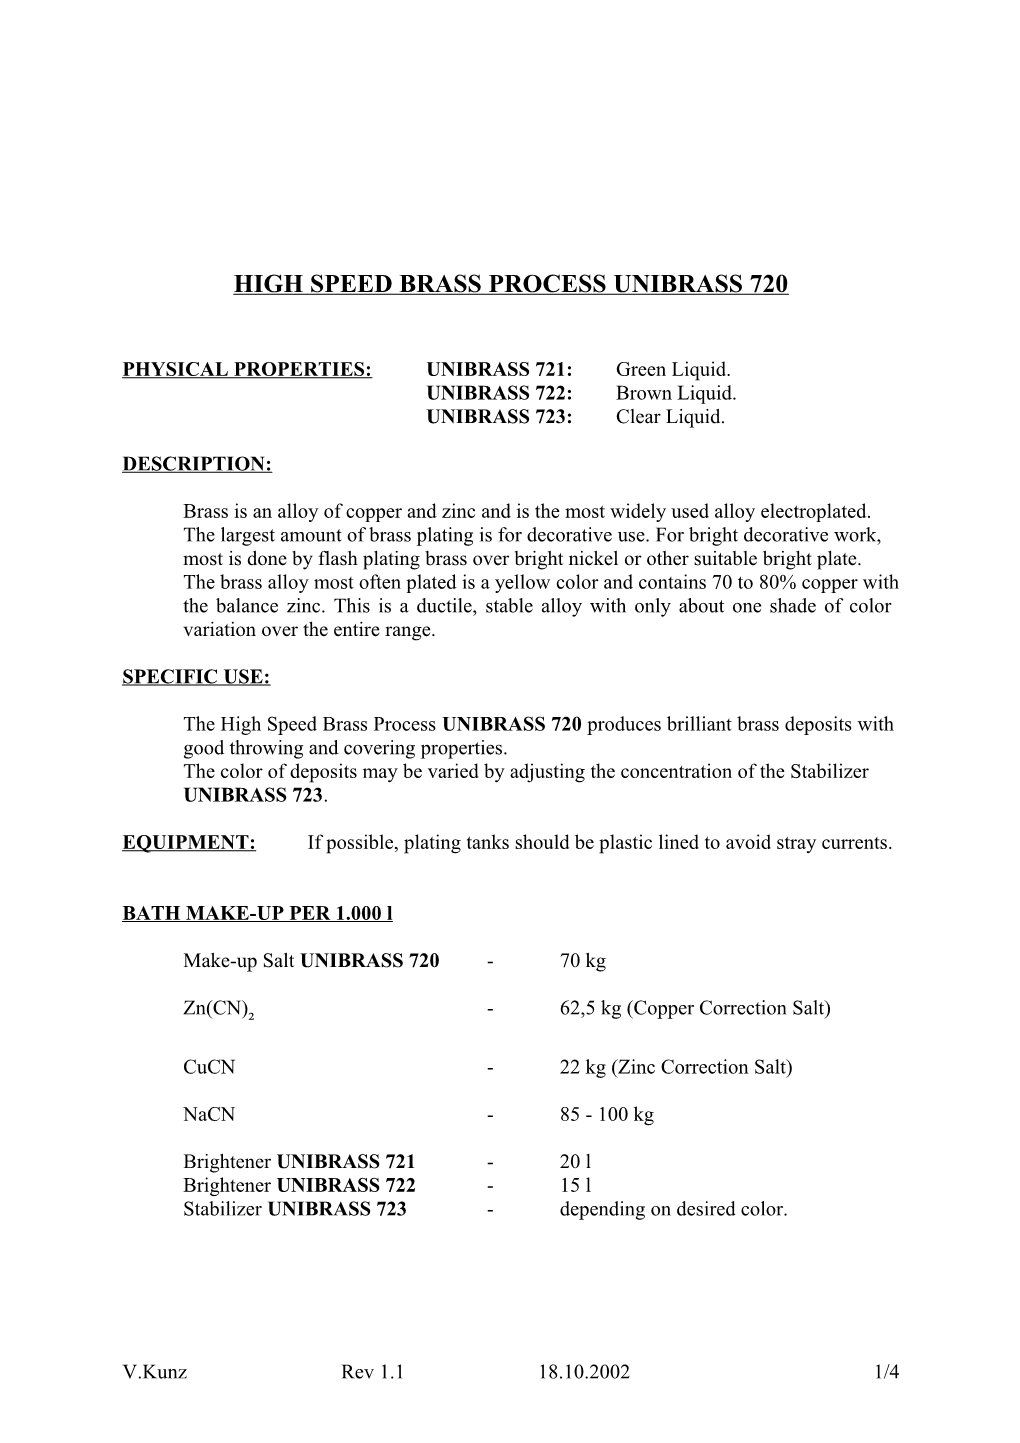 High Speed Brass Process Unibrass 720